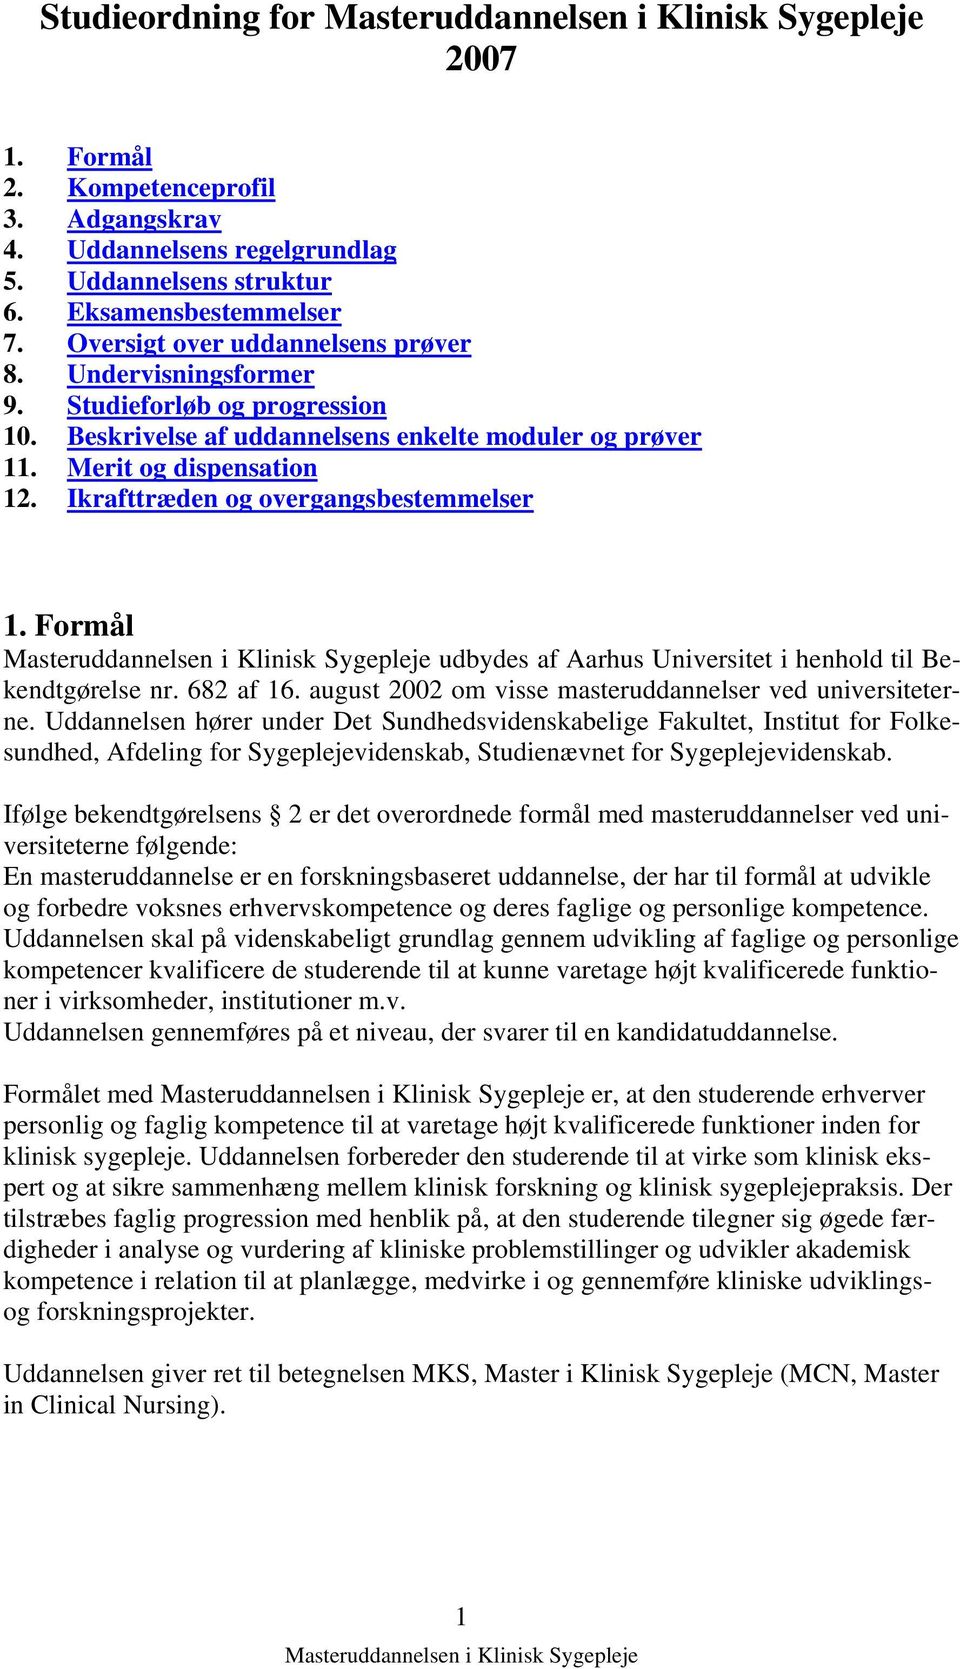 Formål udbydes af Aarhus Universitet i henhold til Bekendtgørelse nr. 682 af 16. august 2002 om visse masteruddannelser ved universiteterne.